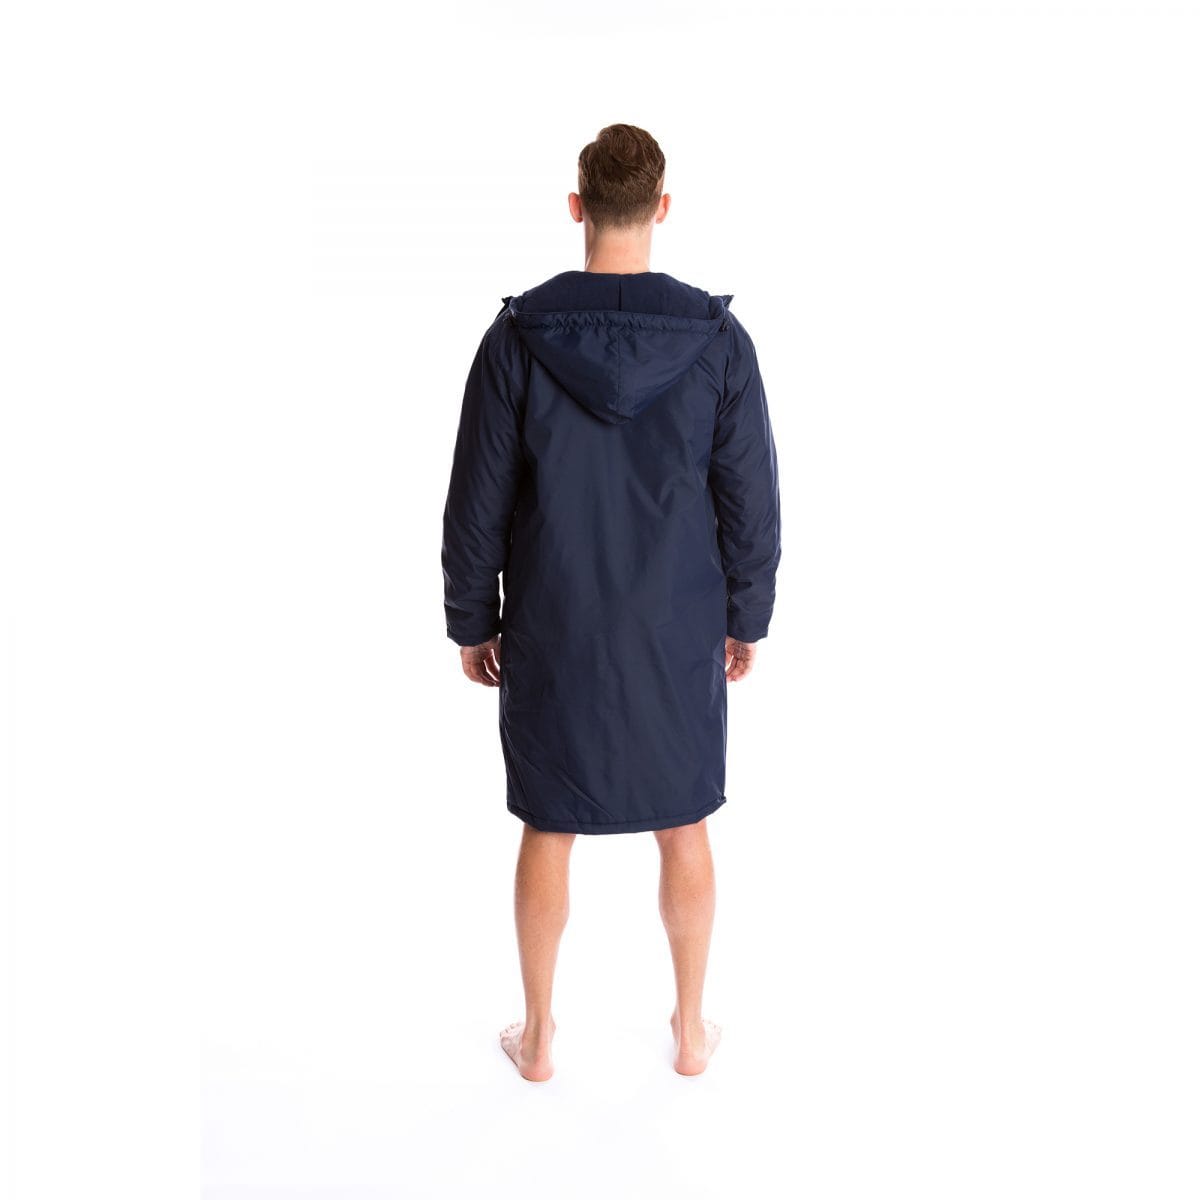 Vorgee Swim Coat